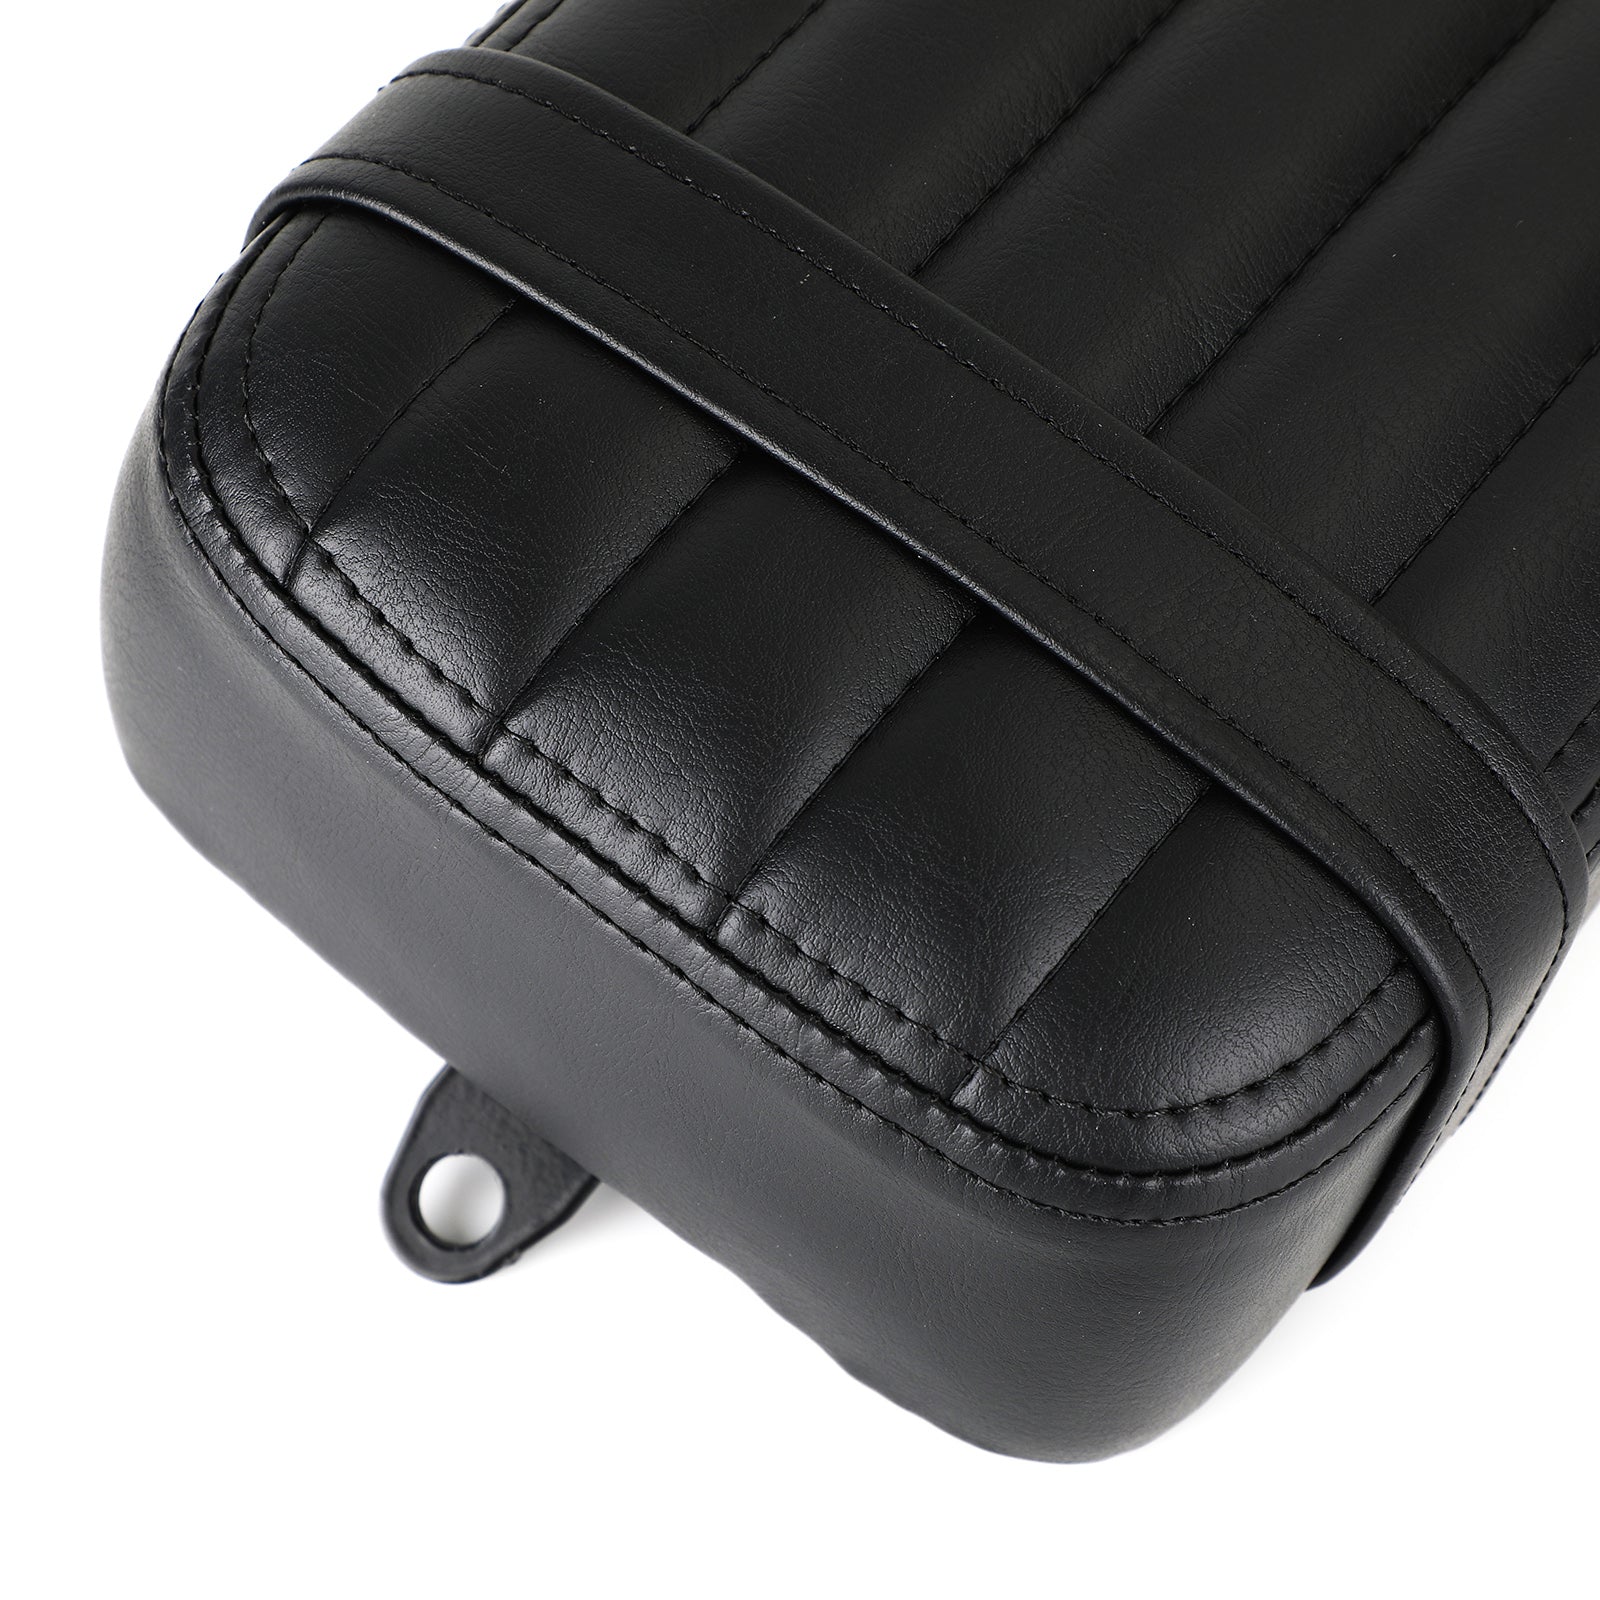 Cuscino del sedile del passeggero posteriore adatto per Softail Slim Flsl Street Bob Fxbb 18-21 generico